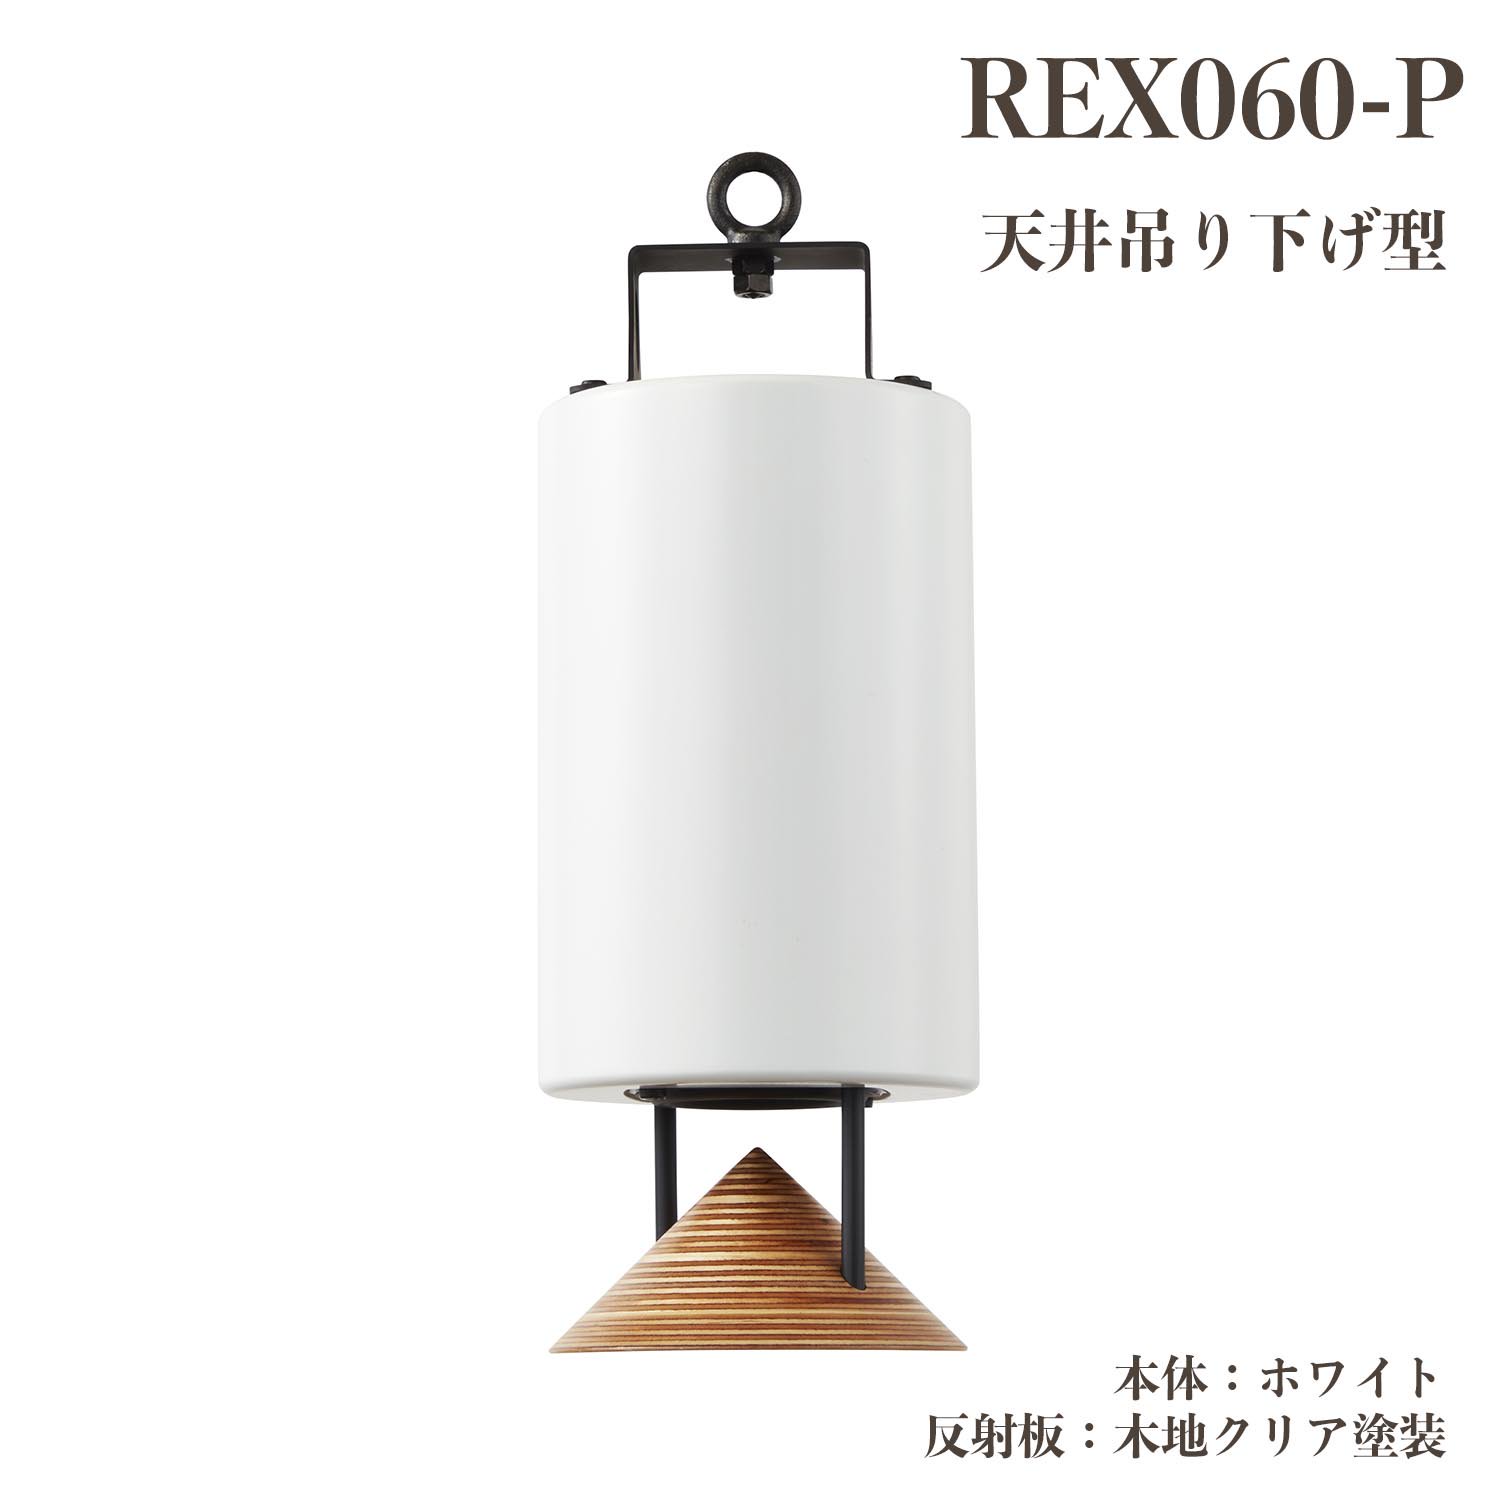 REX060-P